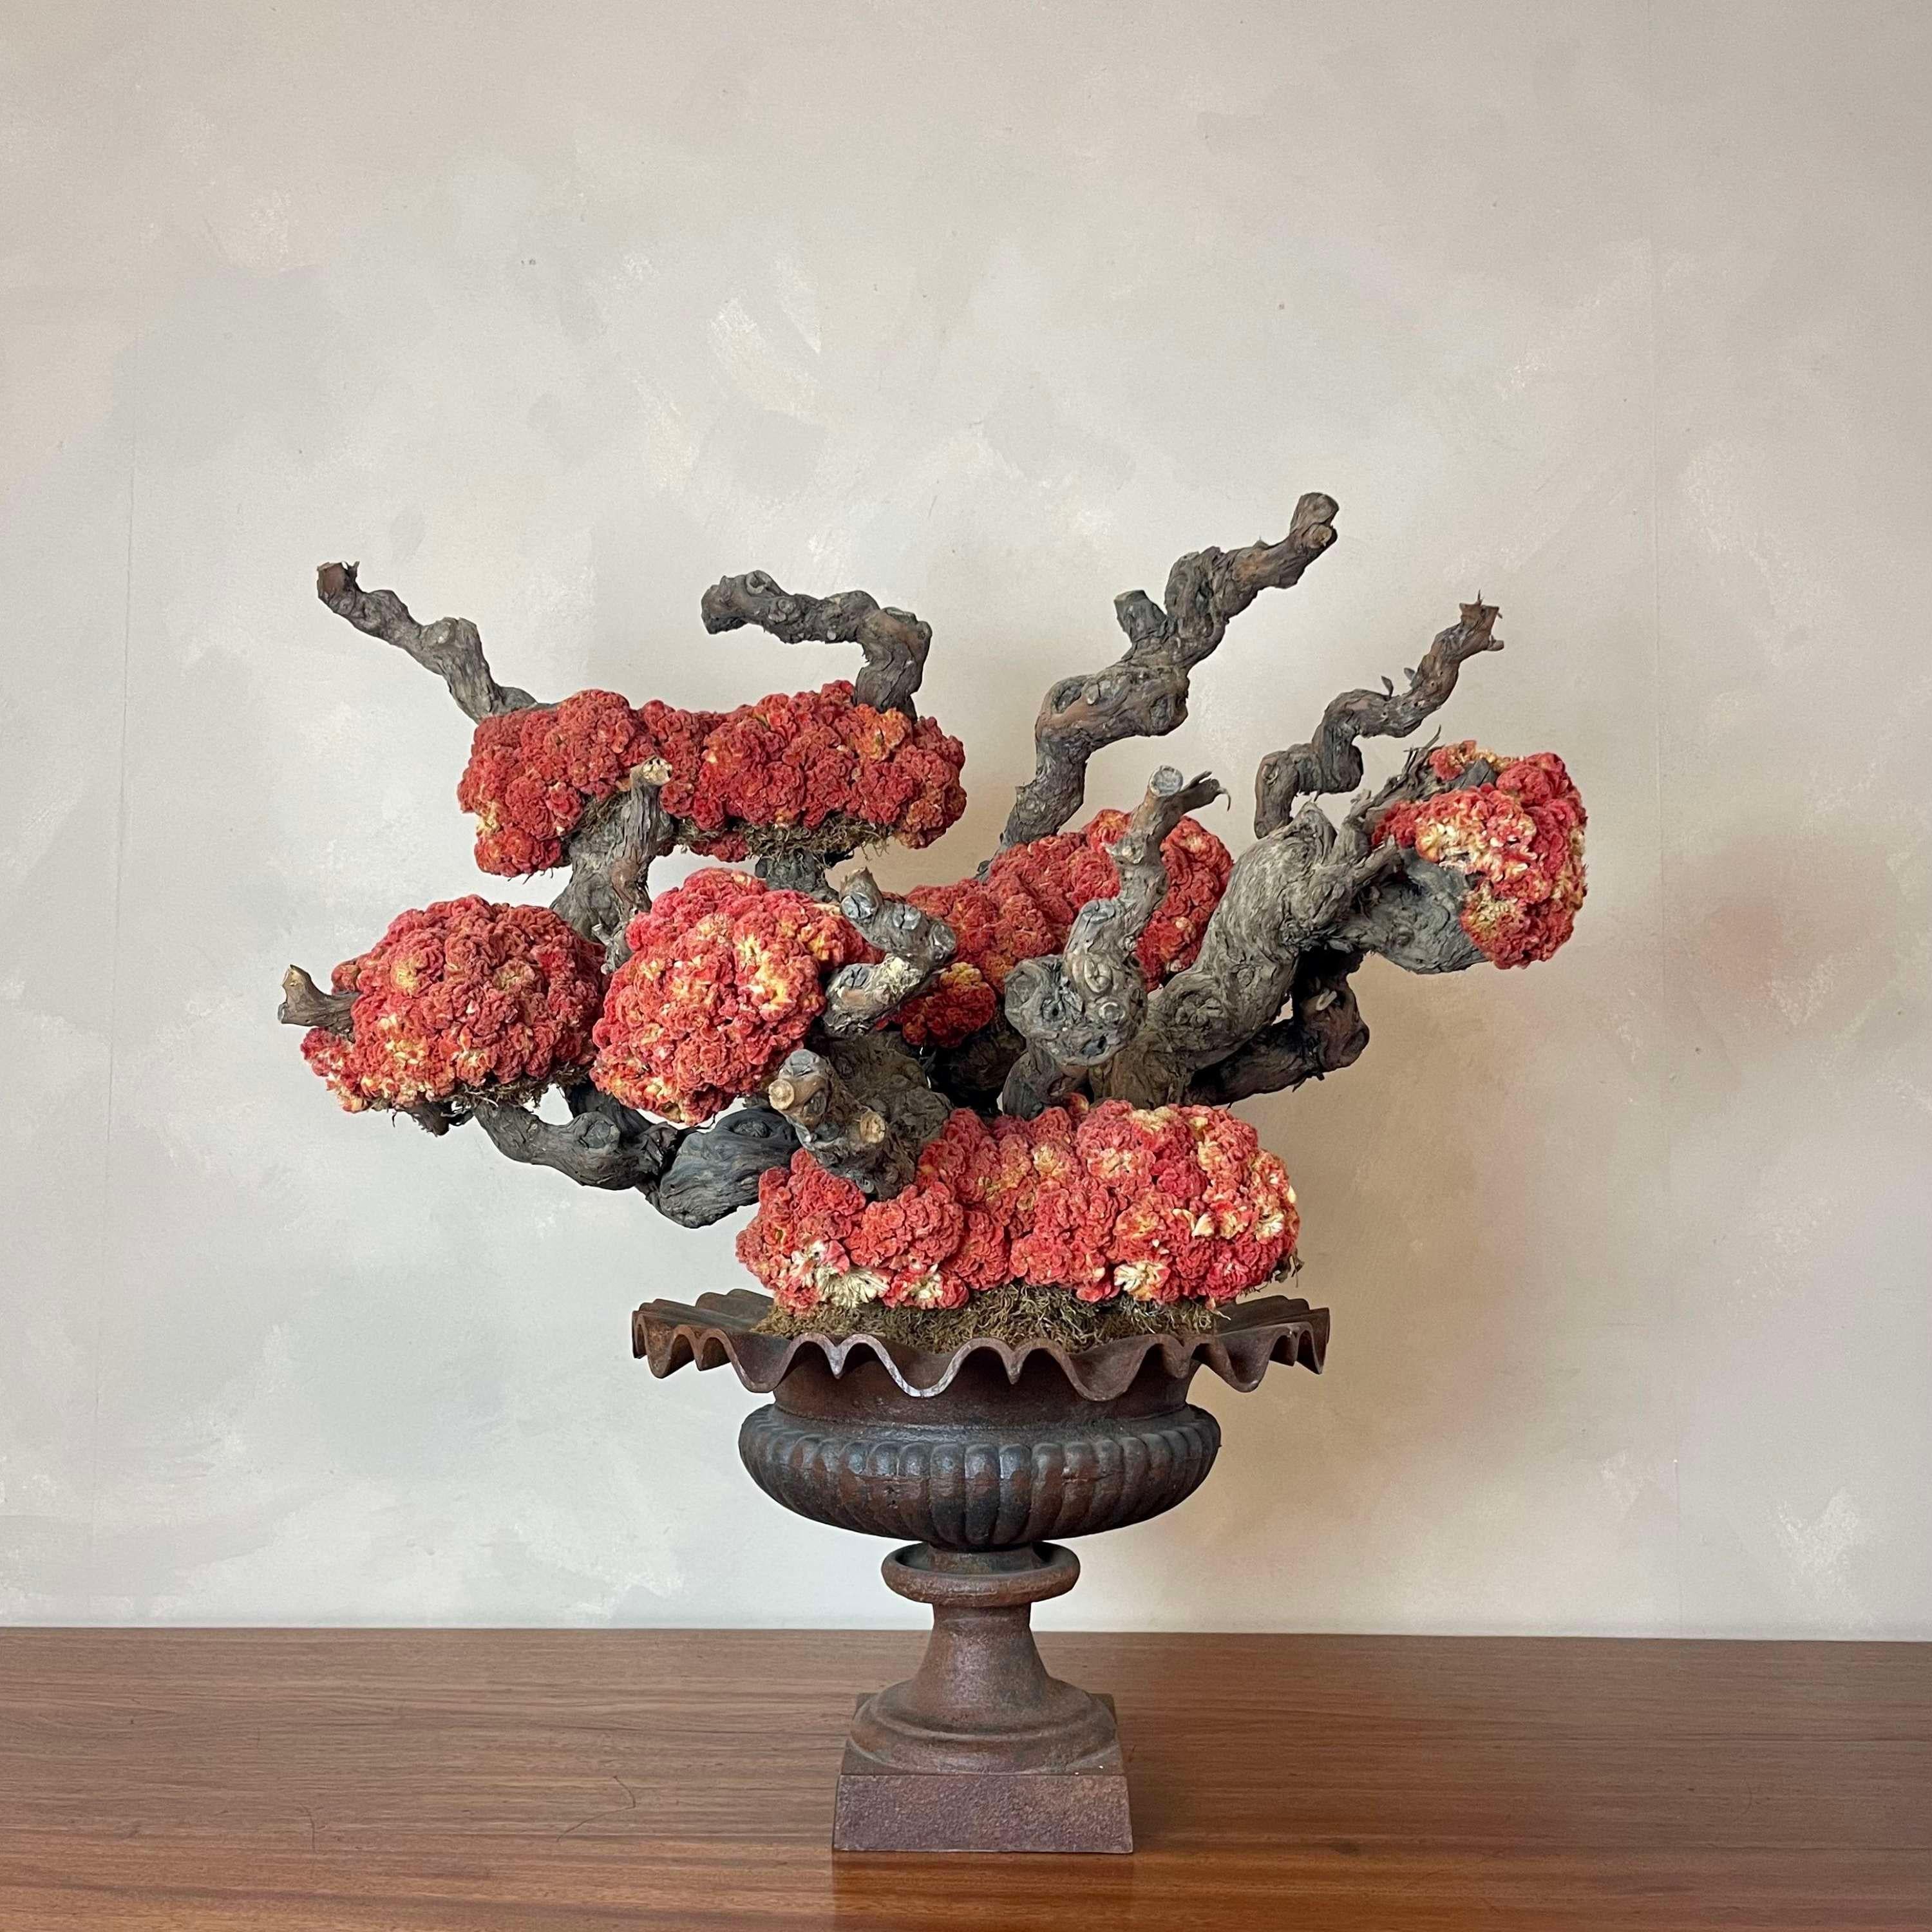 Großes dekoratives Mittelstück.
Urne aus Gusseisen, gefüllt mit dekorativen, zusammengebundenen Zweigen, geschmückt mit auffallend rosa Celosia Cristata (Crested Cockscomb), die an eine Koralle erinnert. 
Dieses Stück hat ein echtes Bonsai-Gefühl